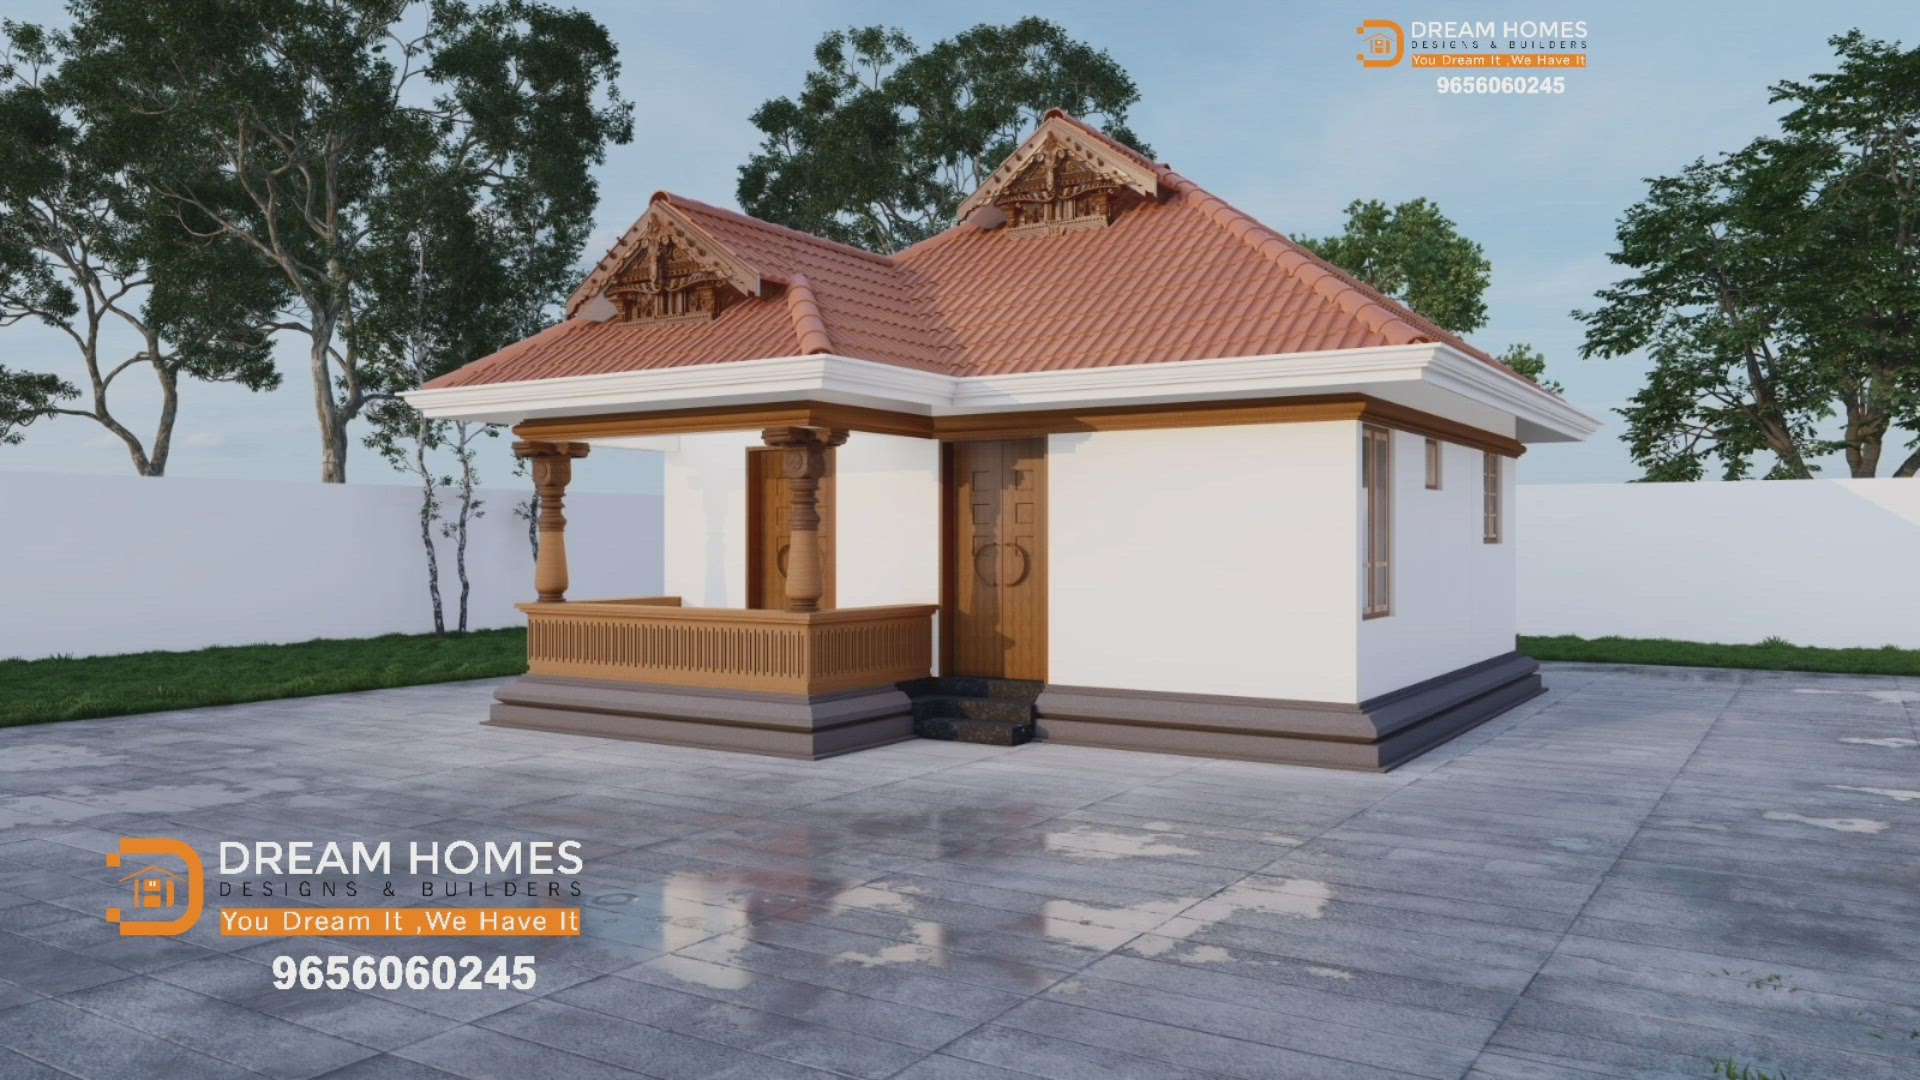 "ഗുജറാത്തില്ലേക്ക് 480 സ്‌ക്വയർ ഫീറ്റിൽ ഒരു കൊച്ചുവീട്👇ഇതാ....,
ഒരേയൊരു പ്ലോട്ടിൽ 5 വീടുകൾ, അതും 5 സംസ്ഥാനങ്ങളിൽ നിന്നുമുള്ള ഡിസൈനുകളിൽ നമ്മുടെ കേരളാ സ്റ്റൈൽ ട്രെഡീഷണൽ വീടും 💚"

"DREAM HOMES DESIGNS & BUILDERS "
            You Dream It, We Have It'

       "Kerala's No 1 Architect for Traditional Homes"

#traditionalhome #traditional

"A beautiful traditional structure  will be completed only with the presence of a good Architect and pure Vasthu Sastra.

Dream Homes will always be there whenever we are needed.

We are providing service to all over India 
No Compromise on Quality, Sincerity & Efficiency.

#traditionalhome #traditional 

www.dreamhomesbuilders.com
For more info
9656060245
7902453187